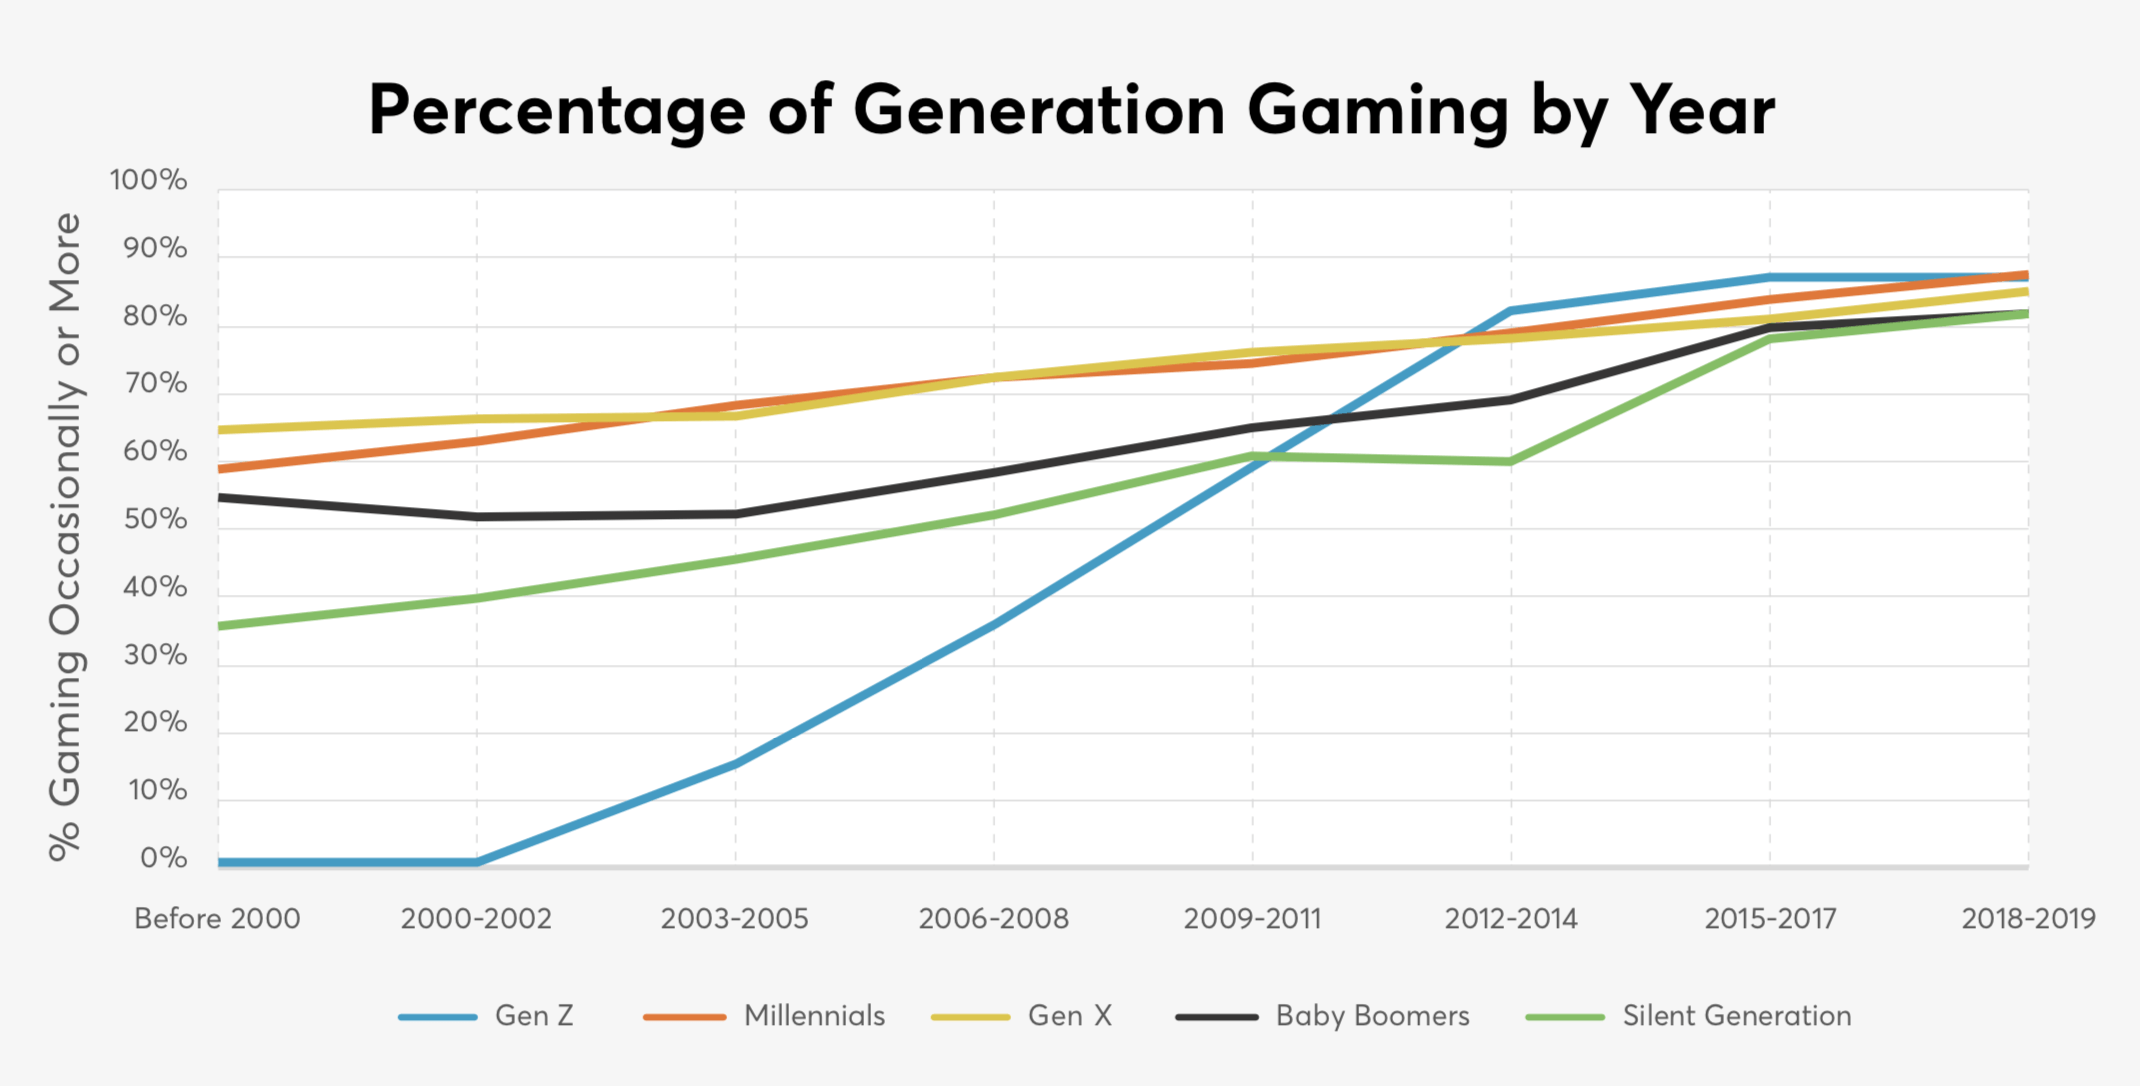 Grafik zeigt den Prozentsatz jeder Generation, die Videospiele spielt, und deren Wachstum im Laufe der Zeit